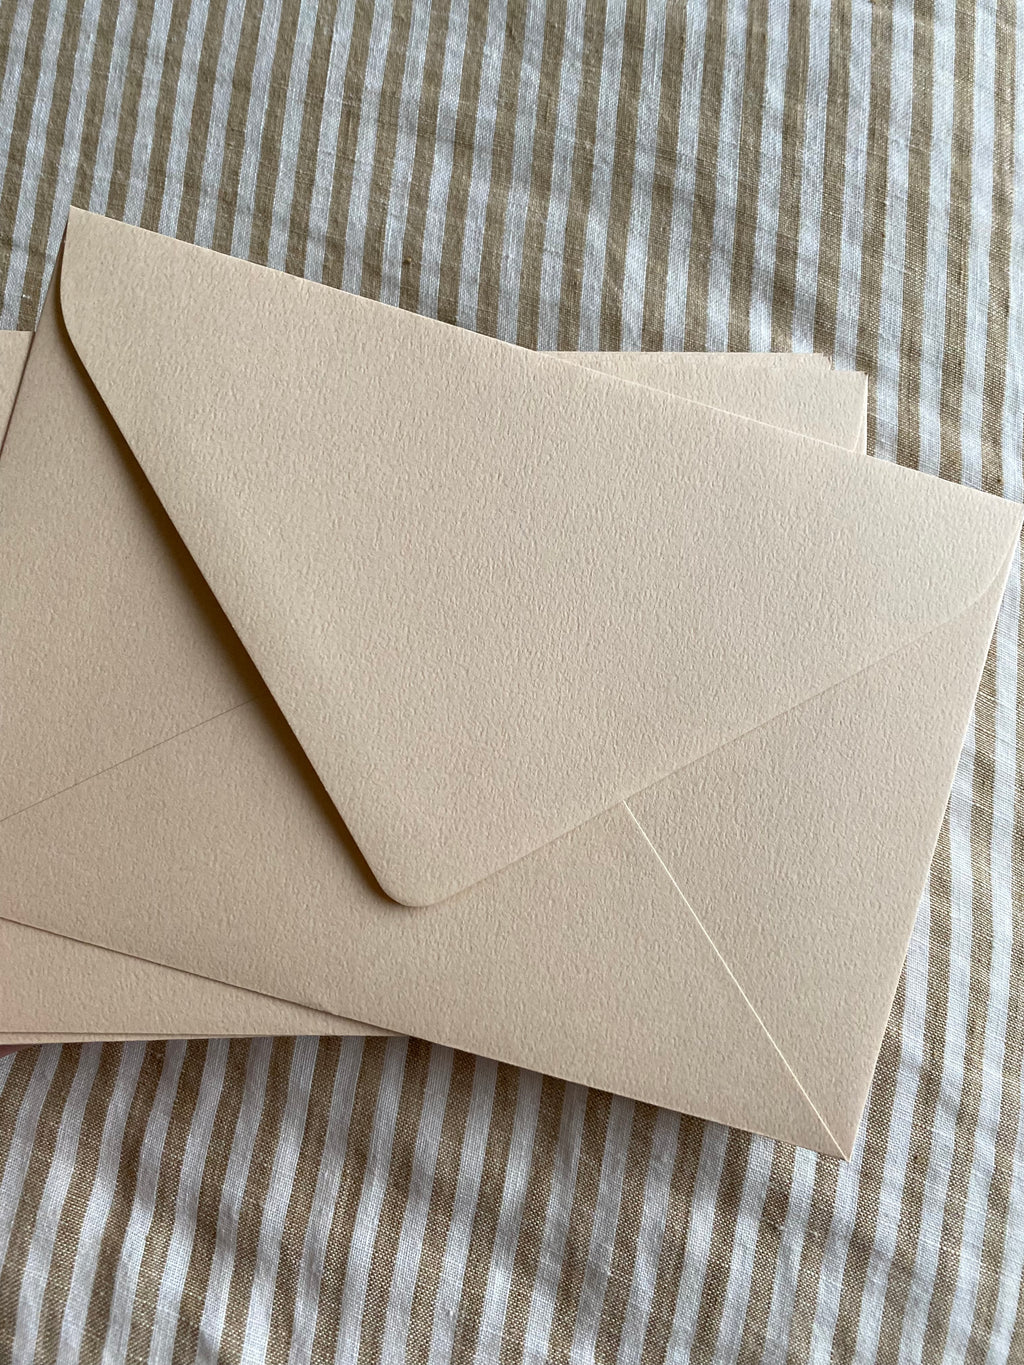 25 x Buttermilk Envelopes